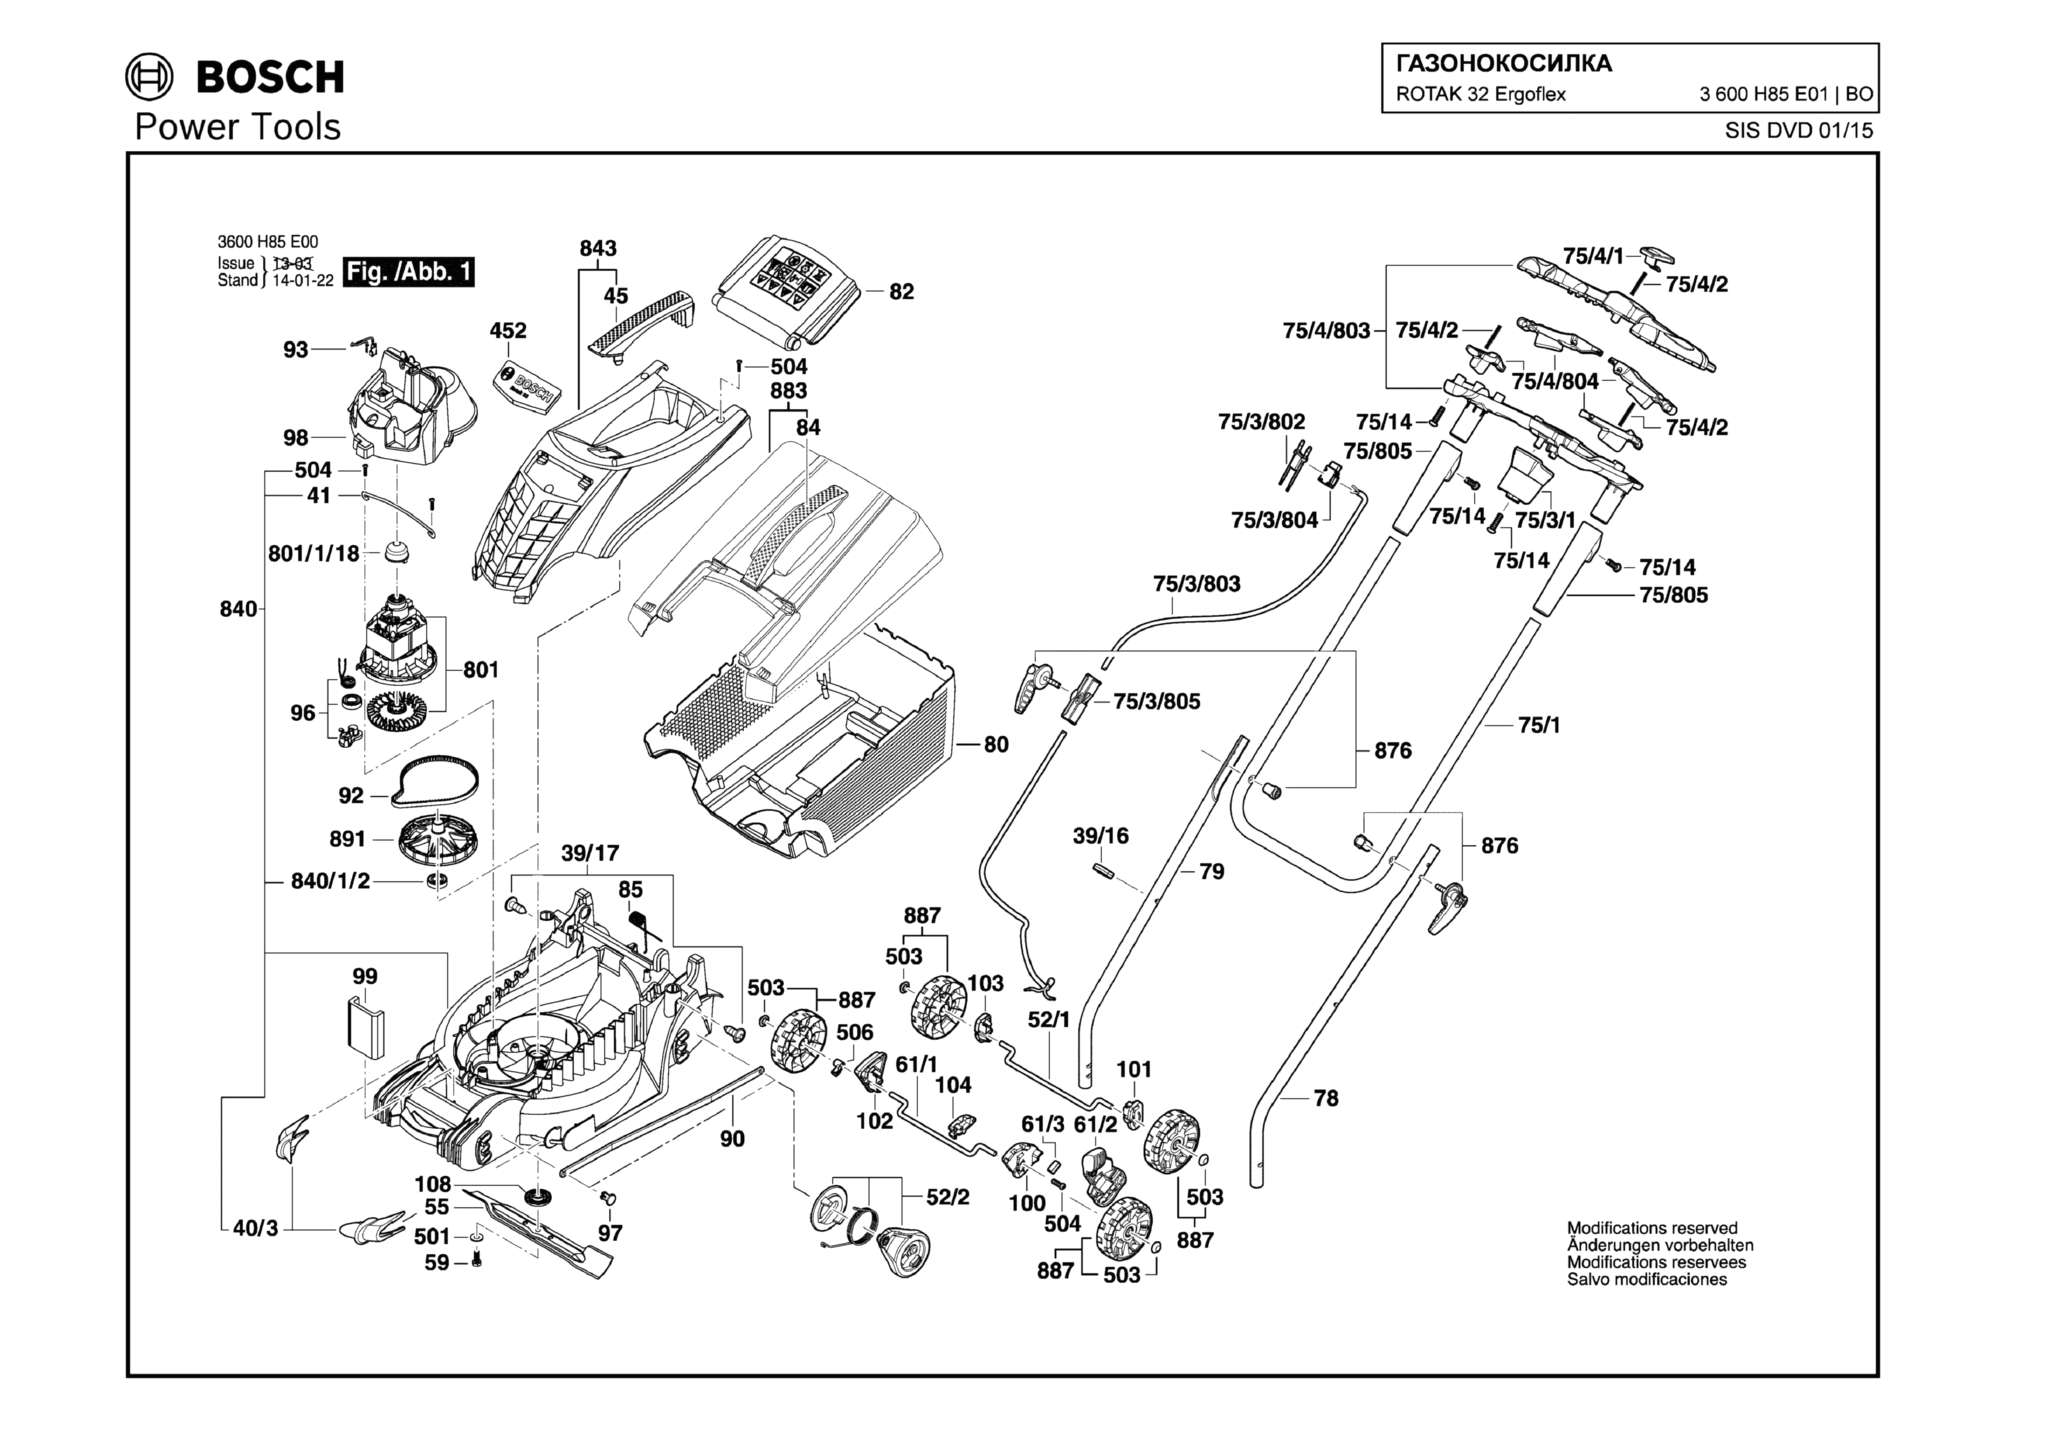 Запчасти, схема и деталировка Bosch ROTAK 32 ERGOFLEX (ТИП 3600H85E01)